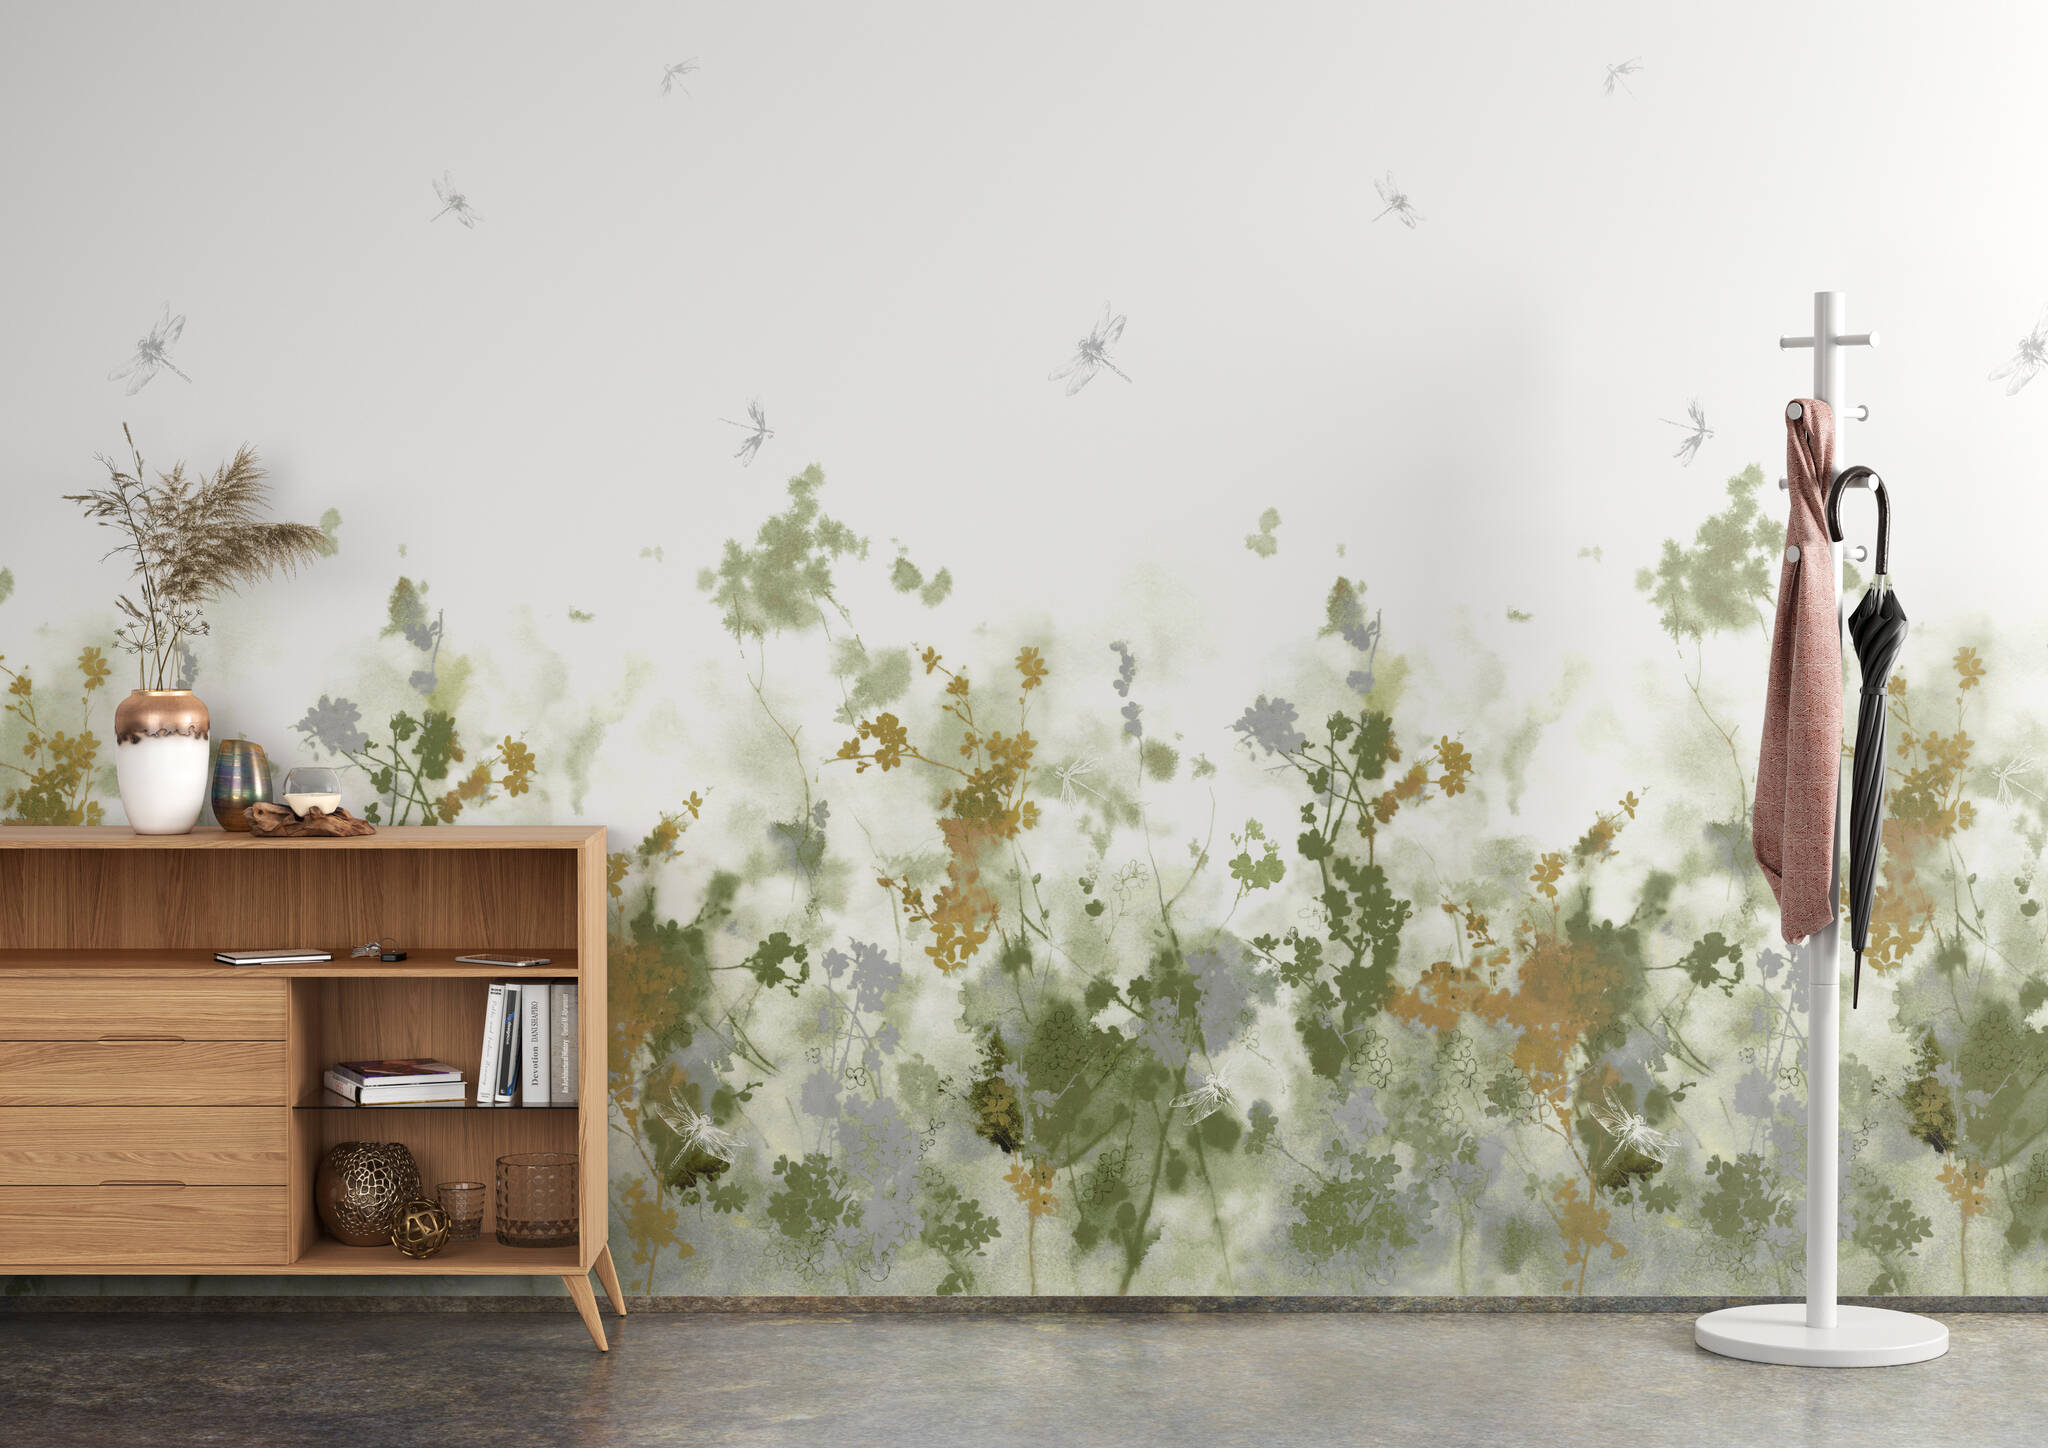 Arbeitszimmer mit Wandbild - Pflanzenprints in sanftem grünen Licht dazu angedeutet einige Libellen